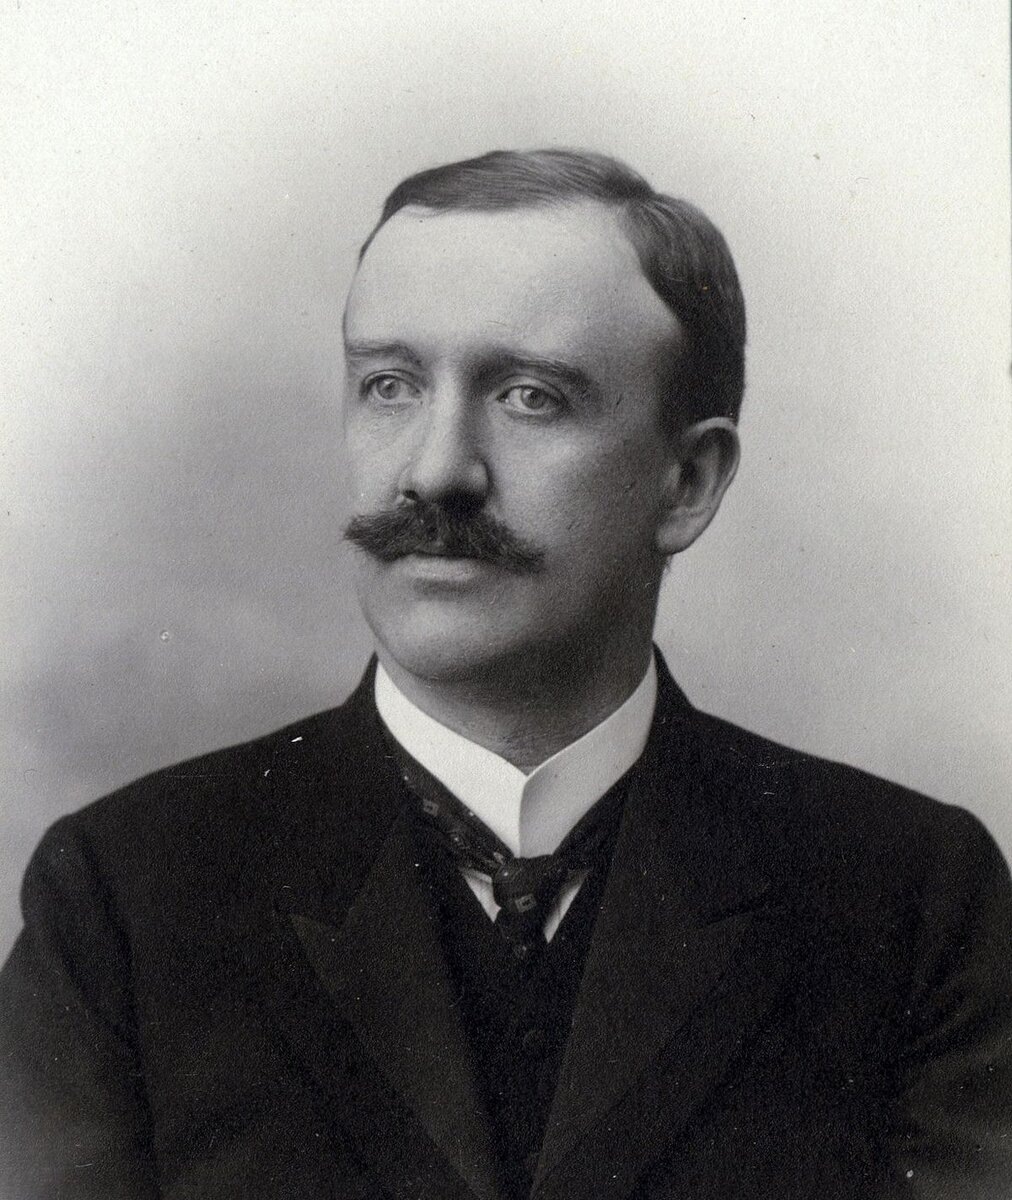 Фридрих/Фриц Хазенёрль ( Friedrich/ Fritz Hasenöhrl 1874—1915), прожил 41год. — австро-венгерский физик-теоретик, член-корреспондент Австрийской Академии наук.